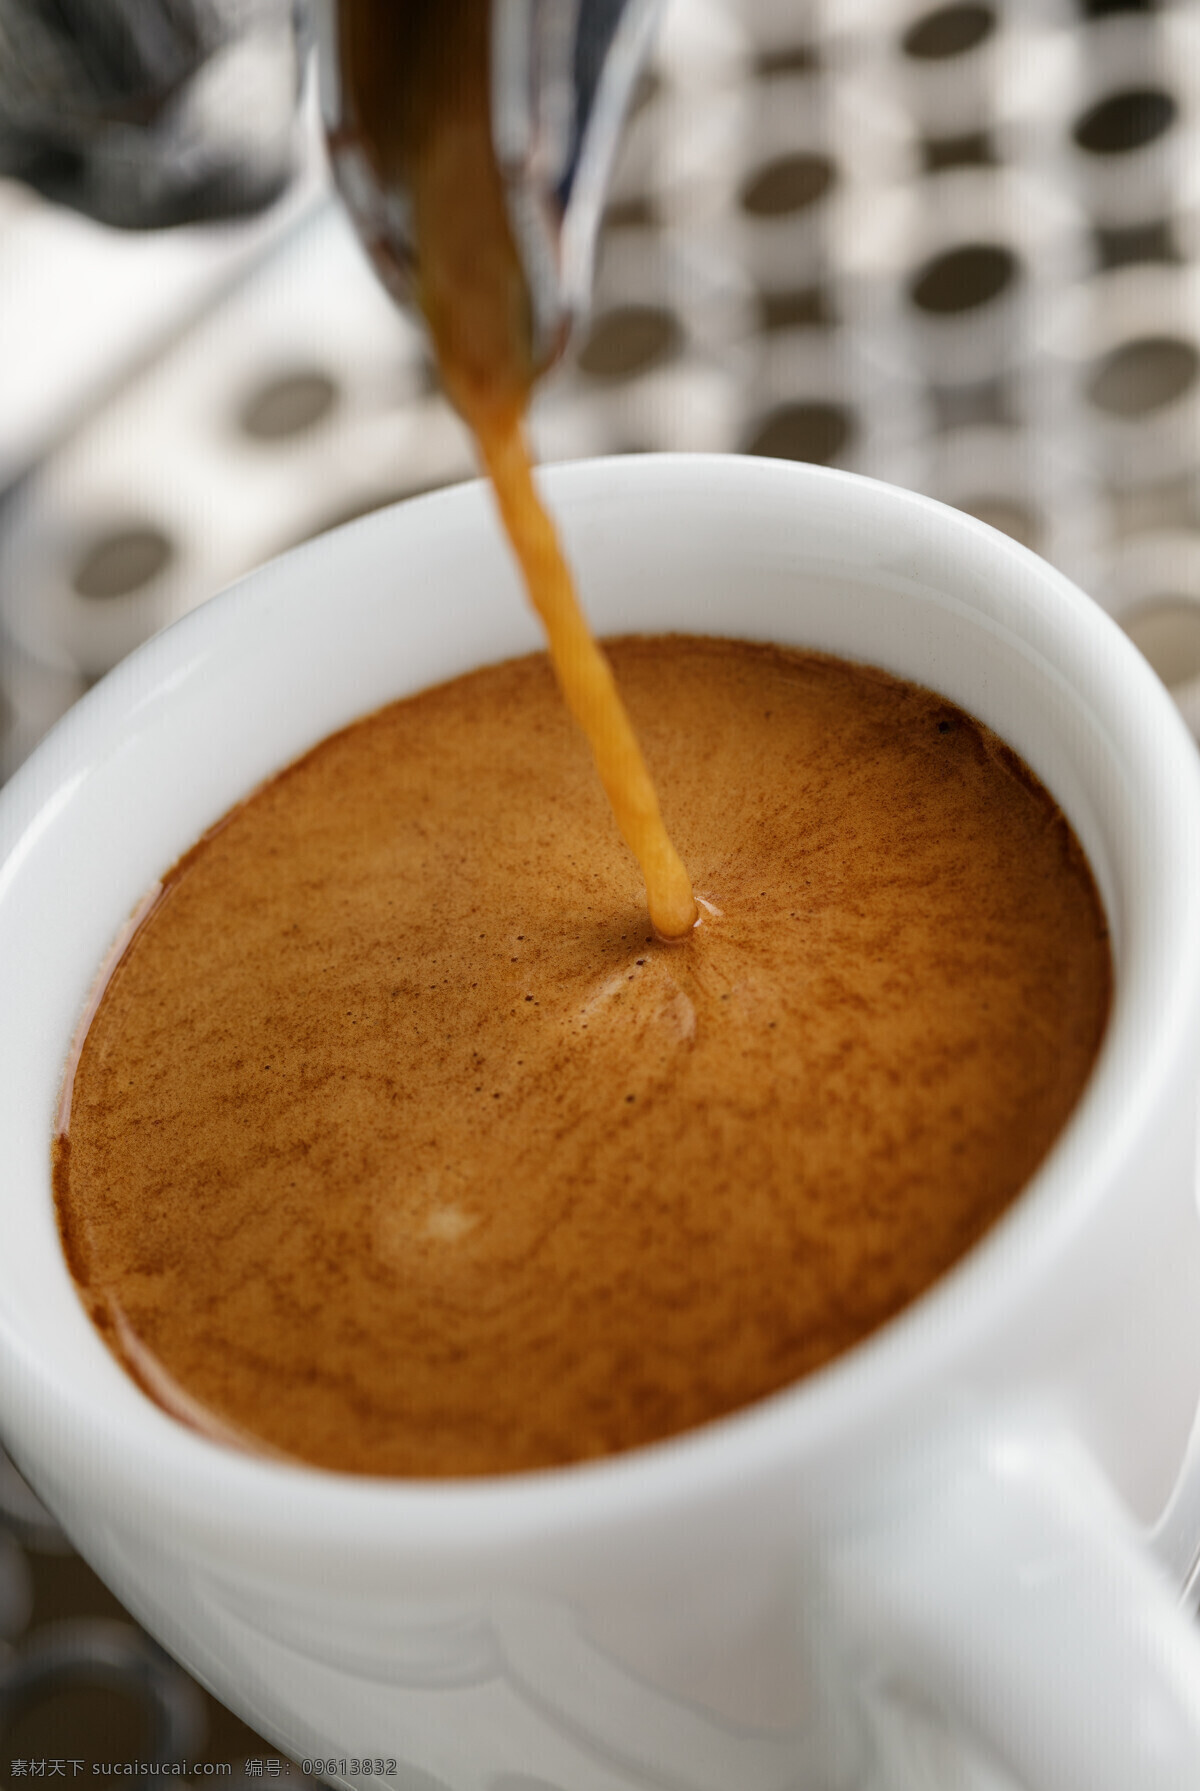 流动 香 浓 咖啡 香浓咖啡 休闲饮品 咖啡杯 咖啡特写 白色咖啡杯 咖啡豆 倒咖啡 咖啡拉花 咖啡柱 咖啡机 磨咖啡 咖啡机流咖啡 灰色